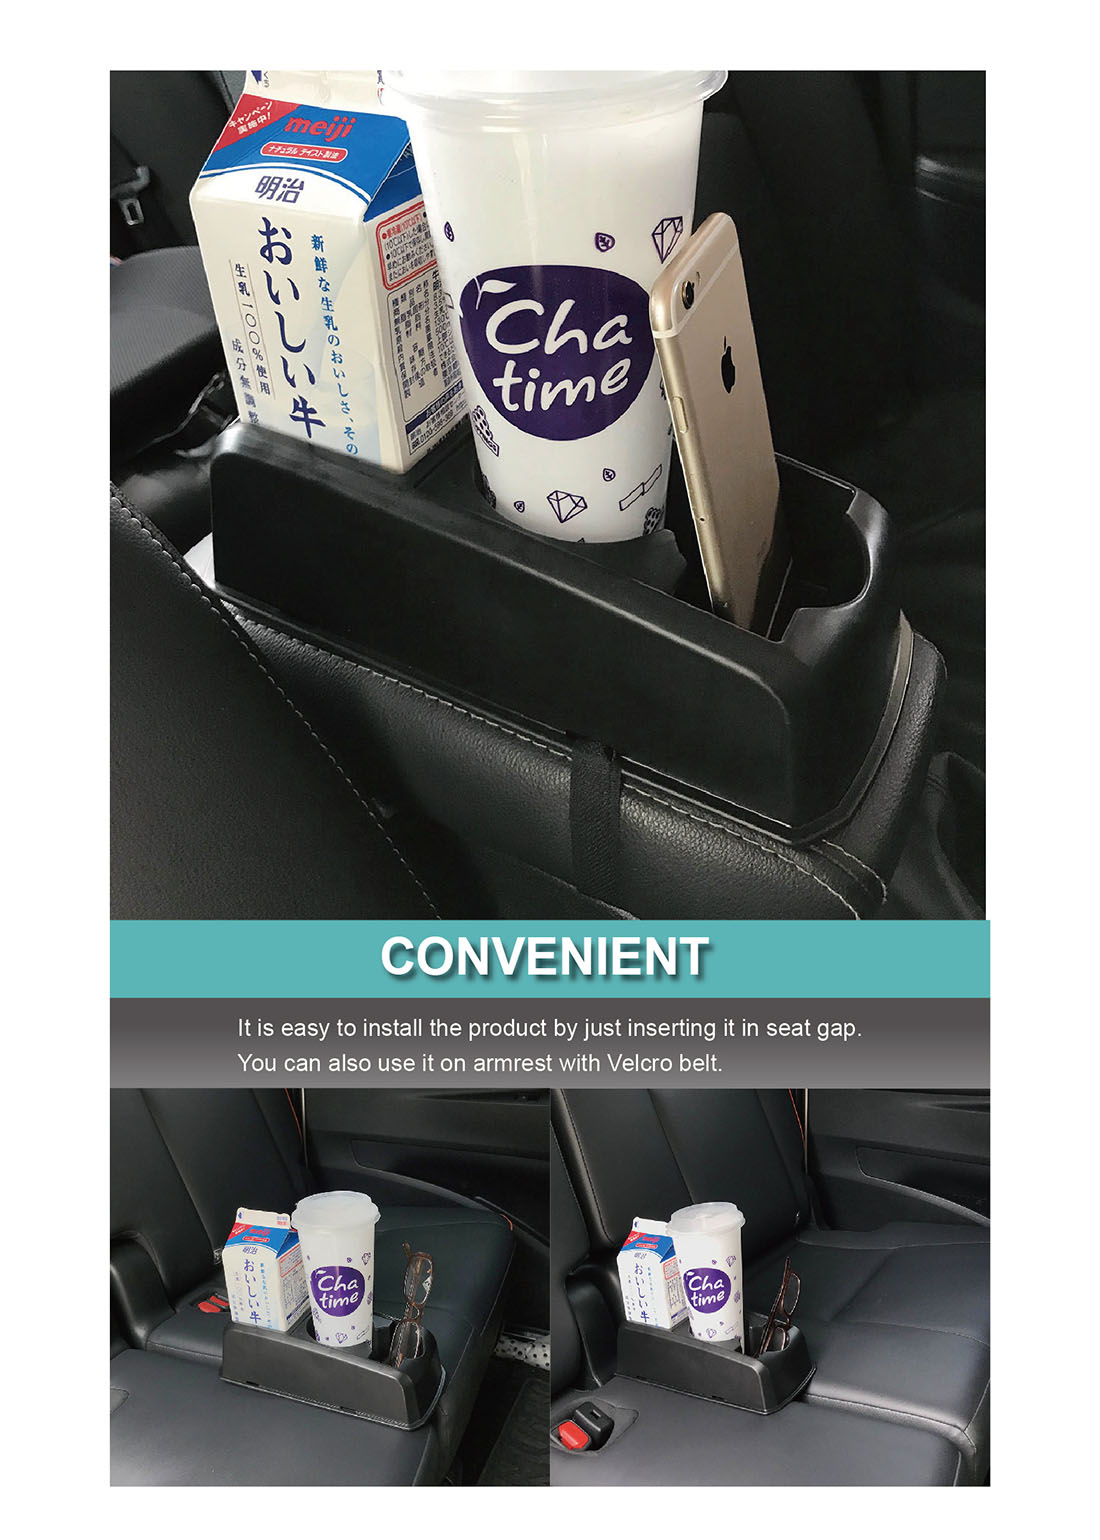 Car Seat Gap Cup Holder Beverage Holder Phone Holder HPA509